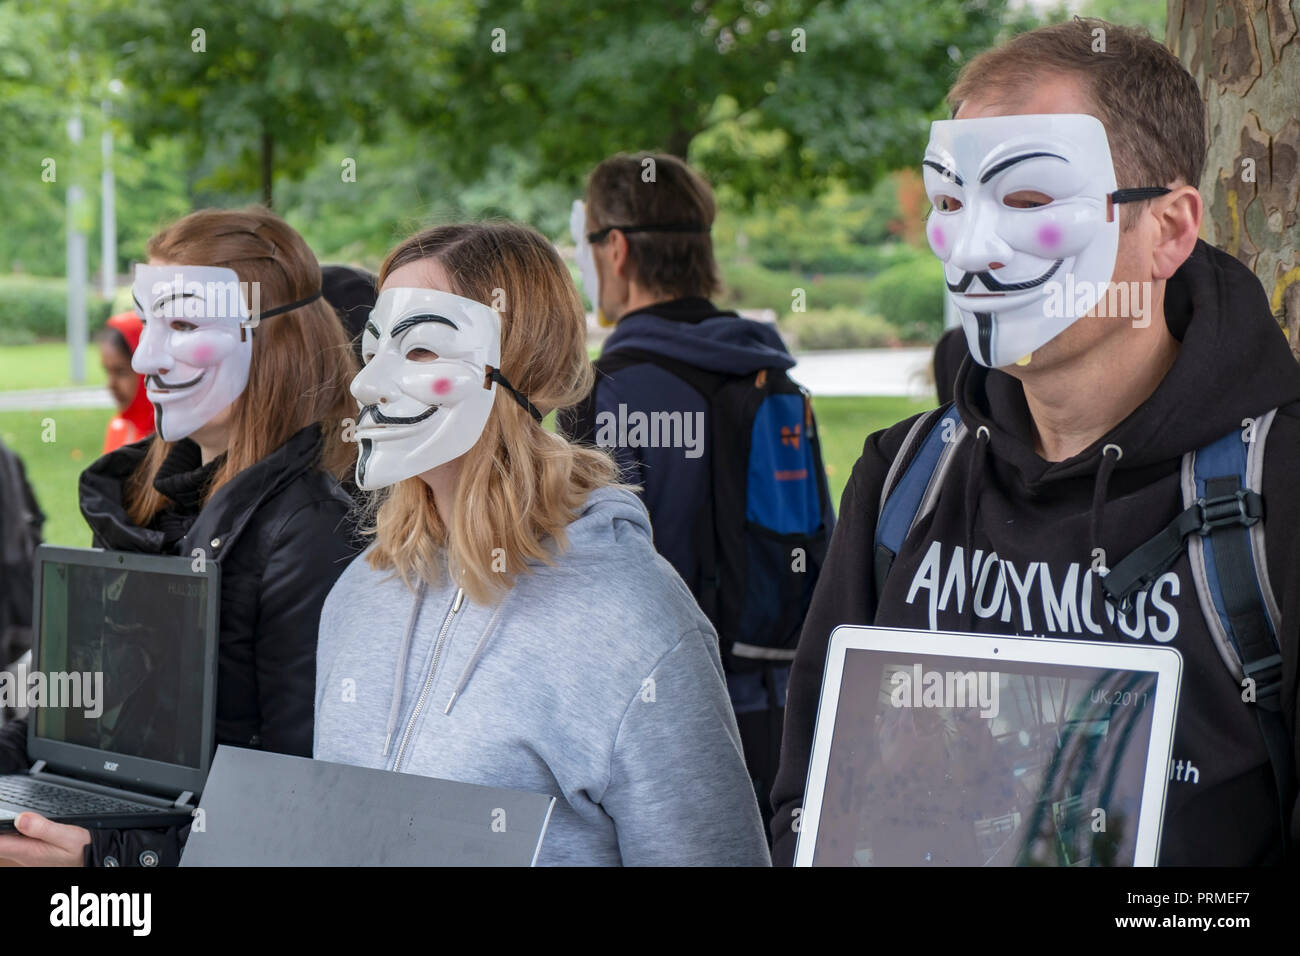 Los miembros del colectivo activista Anonymous para voz, una organización especializada en los derechos de los animales, demuestran que el activismo de la calle en Londres en agosto Foto de stock